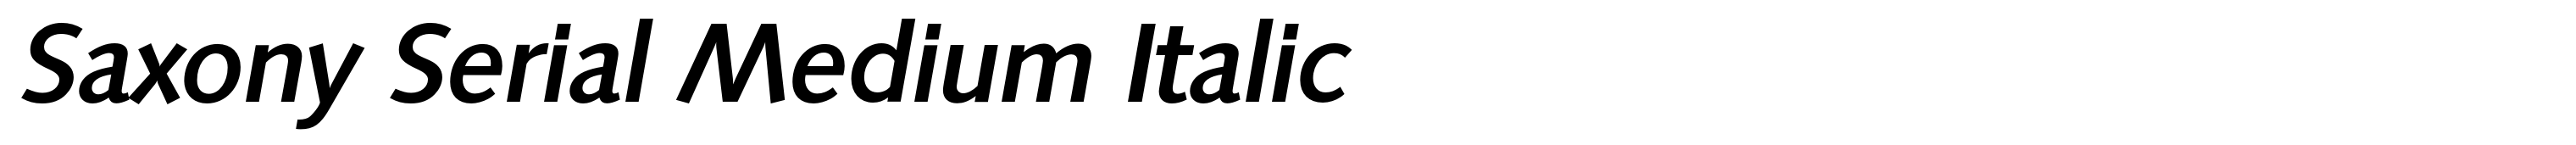 Saxony Serial Medium Italic